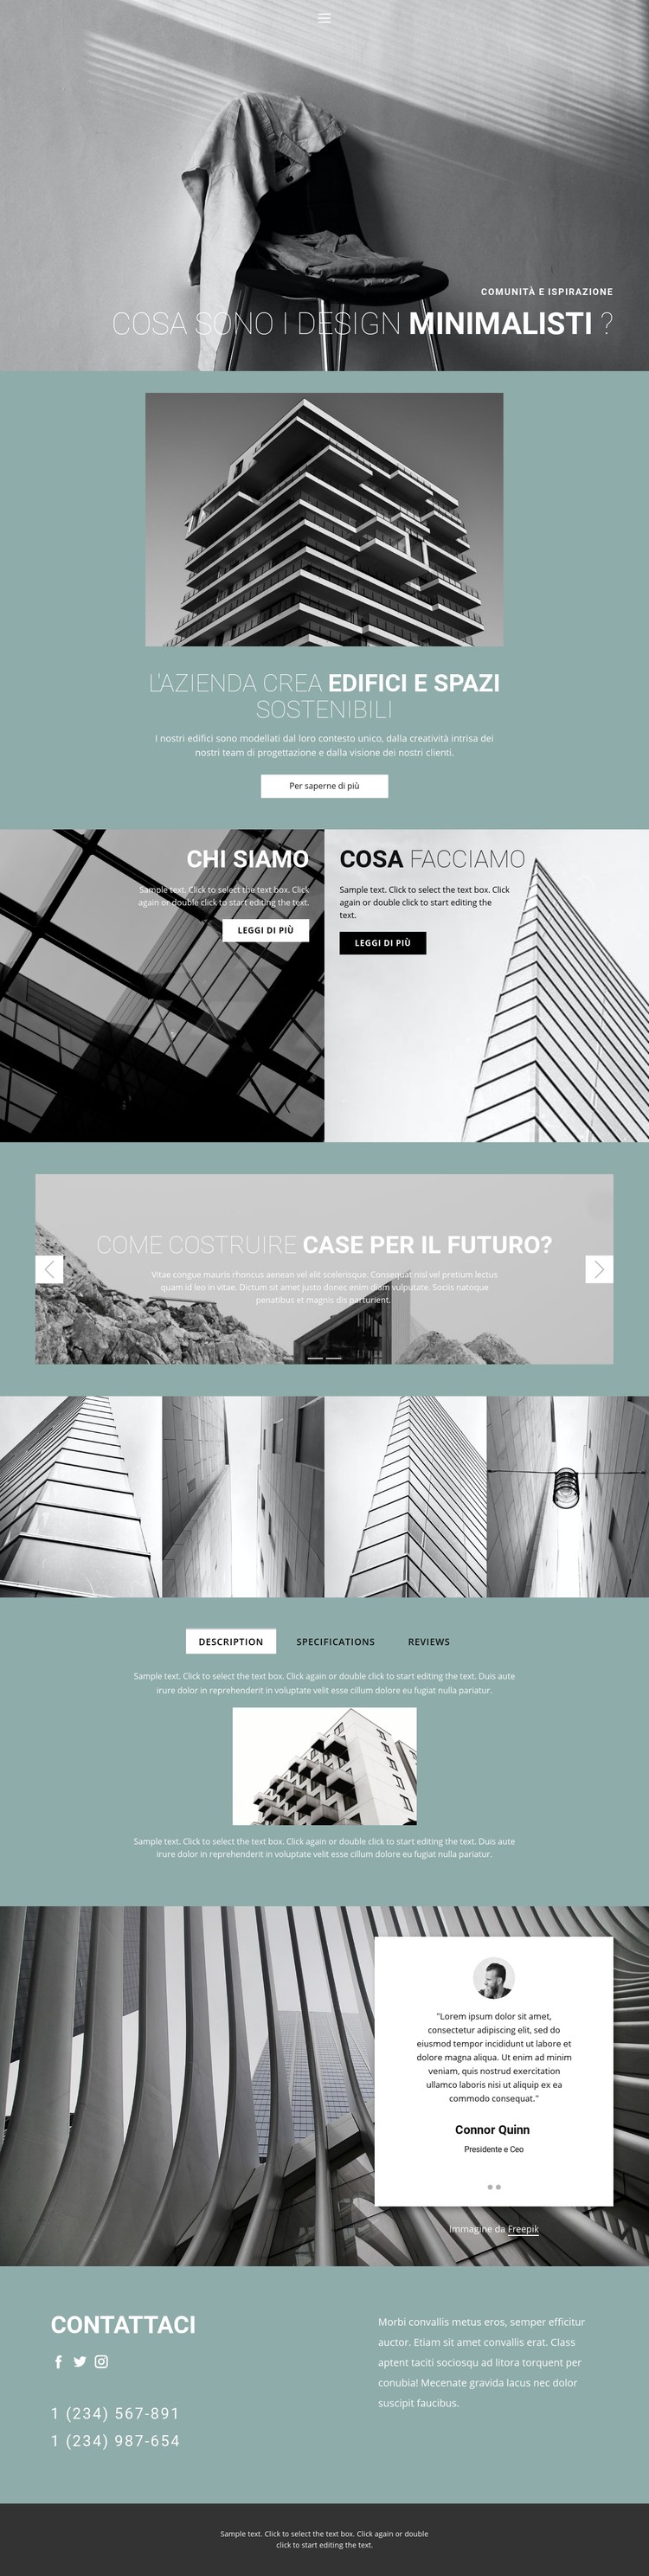 Idee di architettura perfette Modello CSS